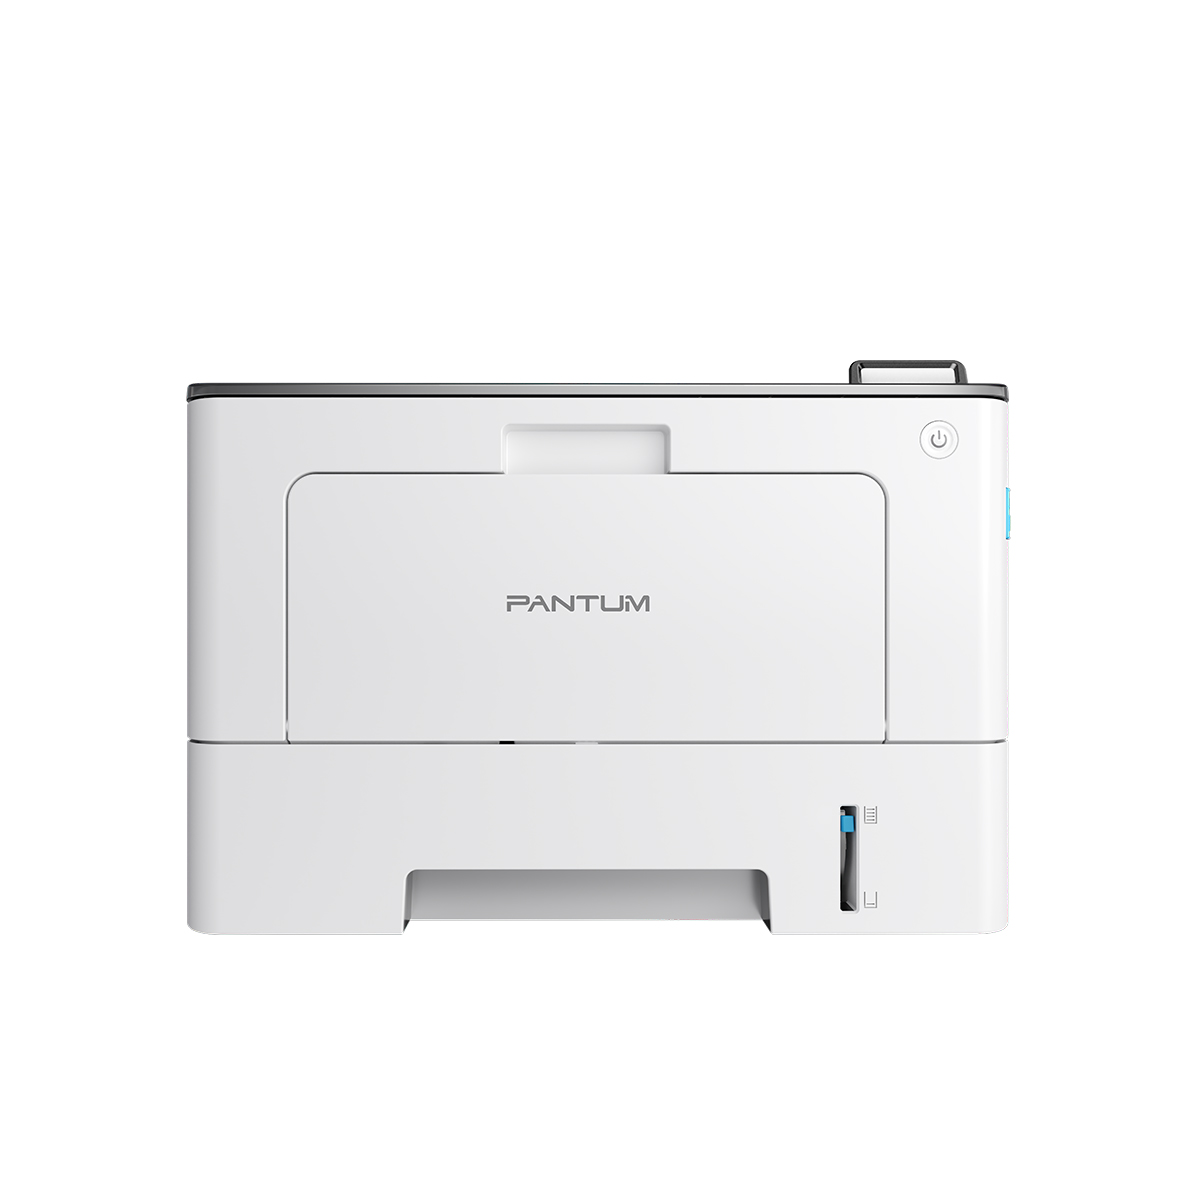 Принтер лазерный Pantum BP5100DW, черно-белая печать, 40 стр/мин, 1200 x 1200 dpi, 512Мб RAM, USB, Ethernet, Wi-Fi